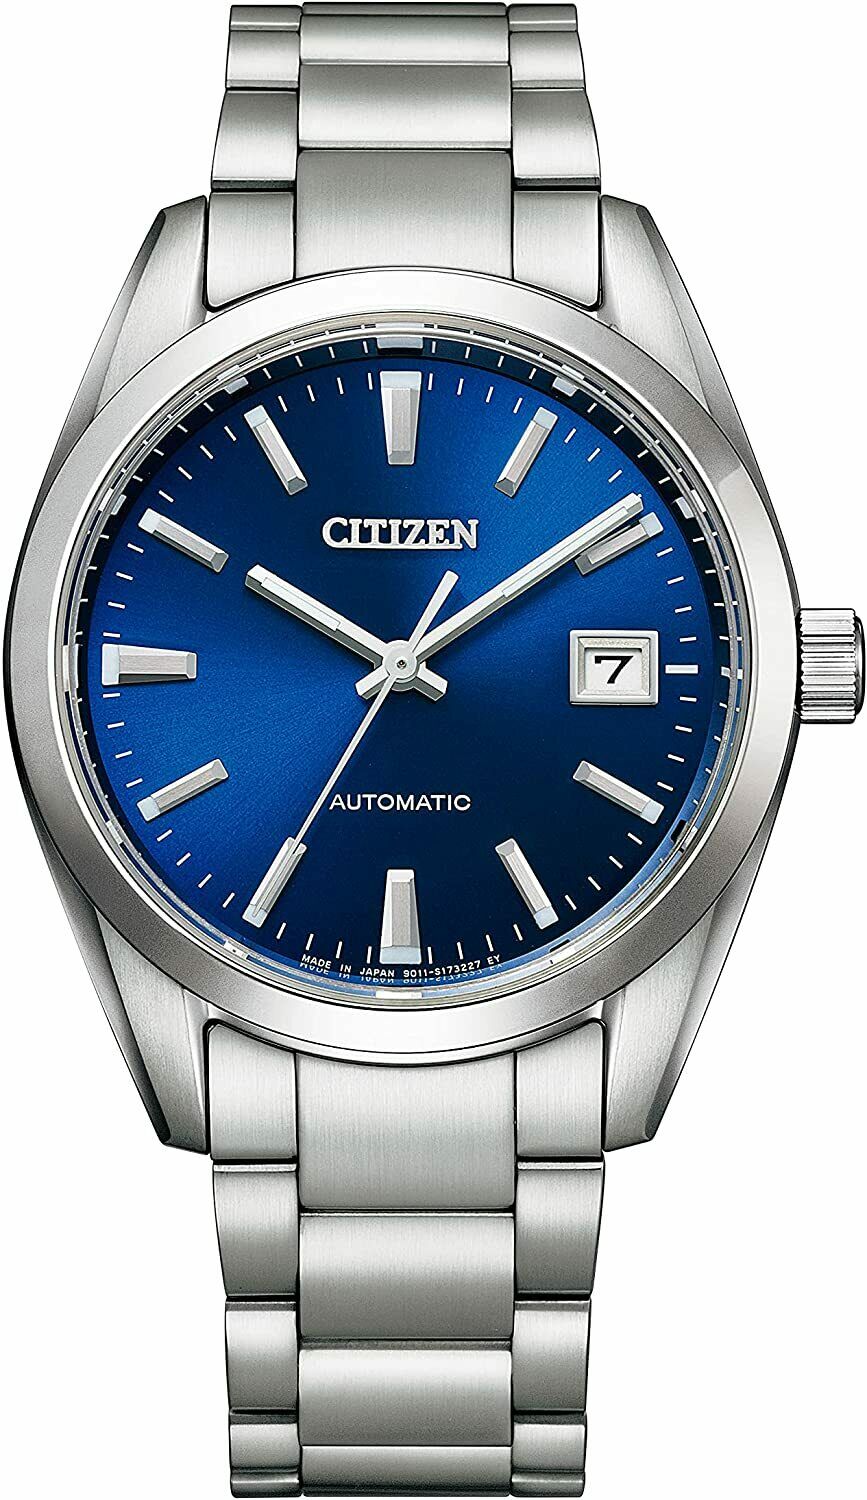 Citizen Automatic Sapphire Glass Men Watch NB1050-59L